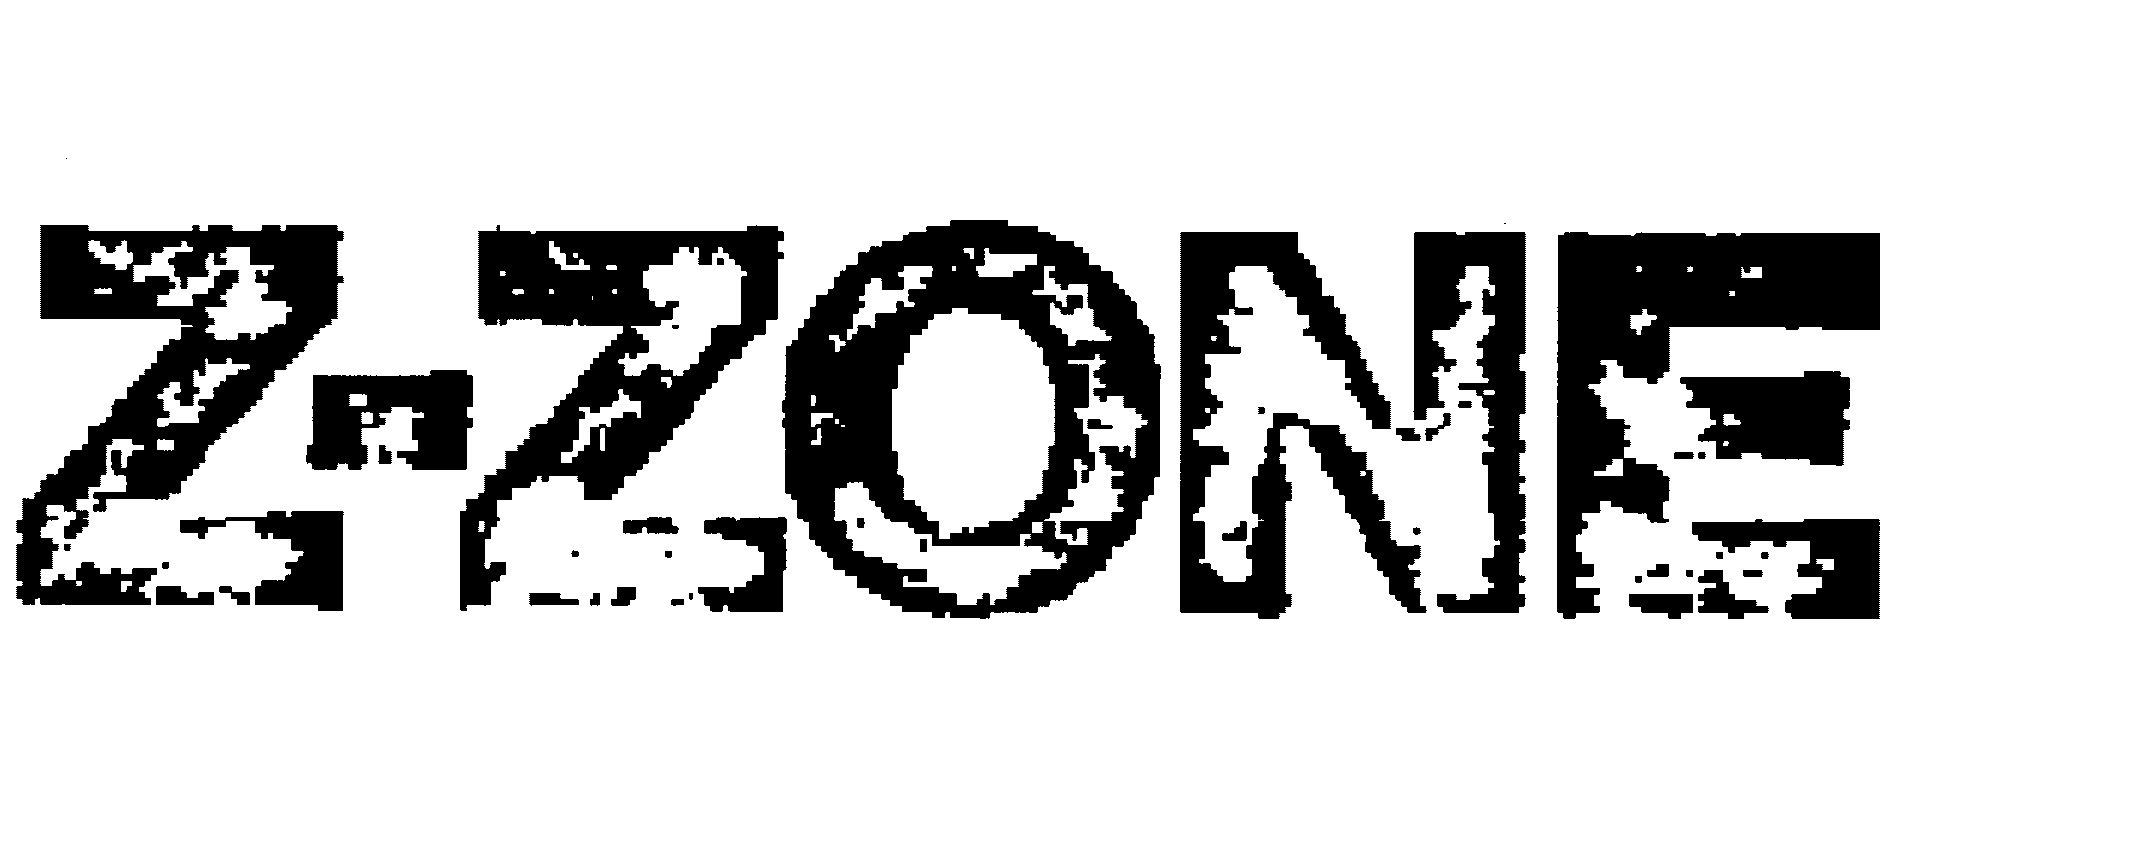  Z-ZONE